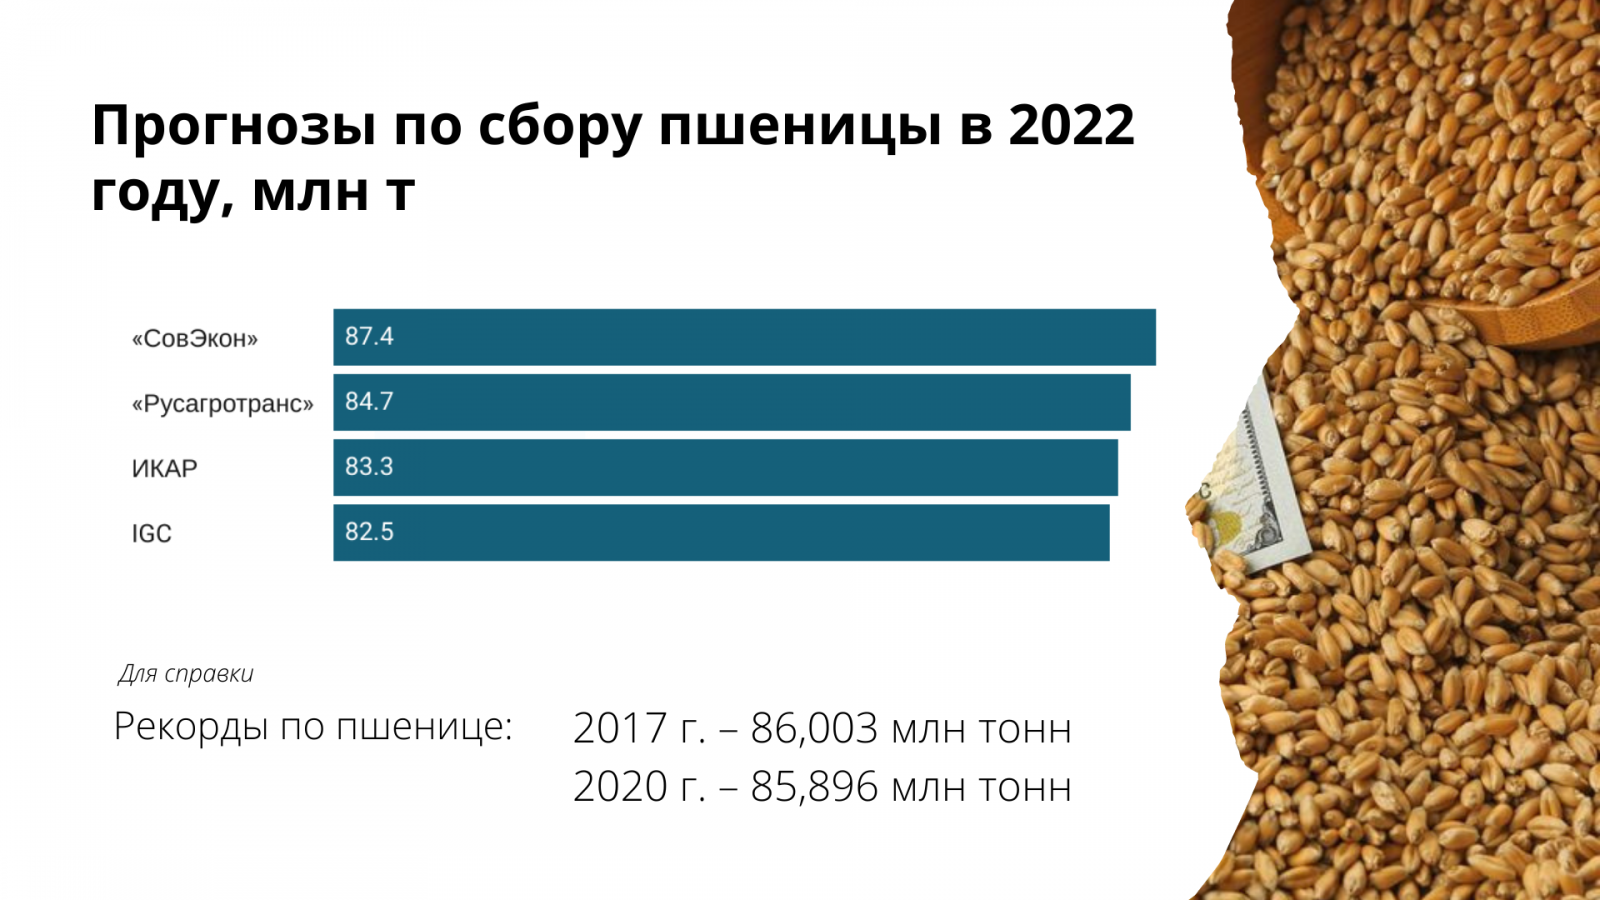 Прогнозы по сбору пшеницы в 2022 году, млн т